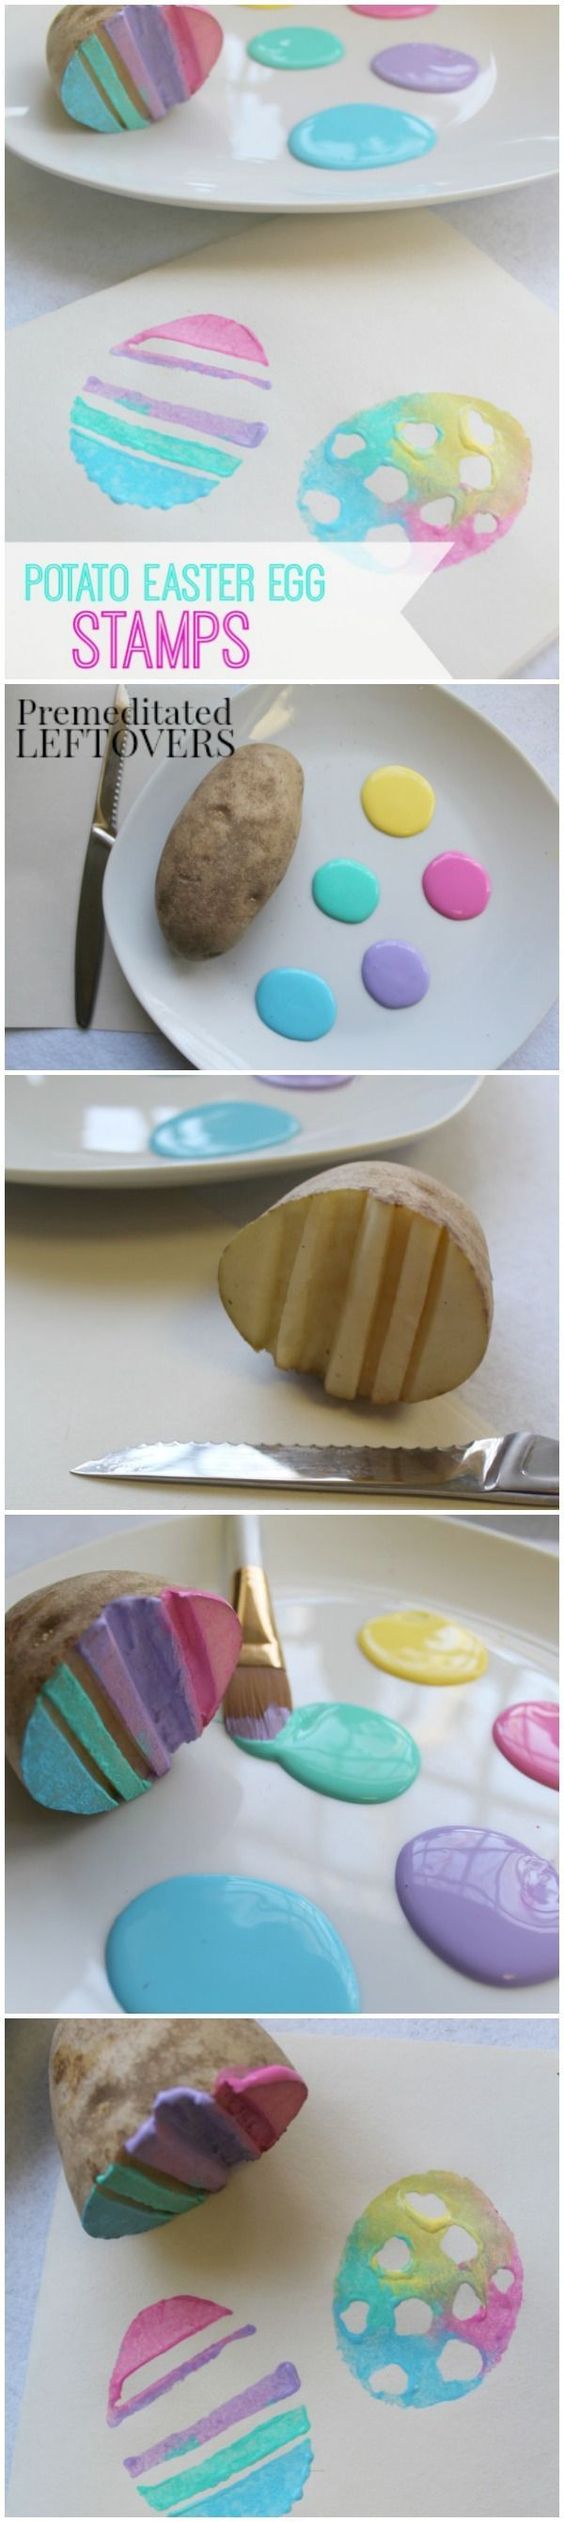 Handmade Potato Easter Egg Stamps for Kids. 